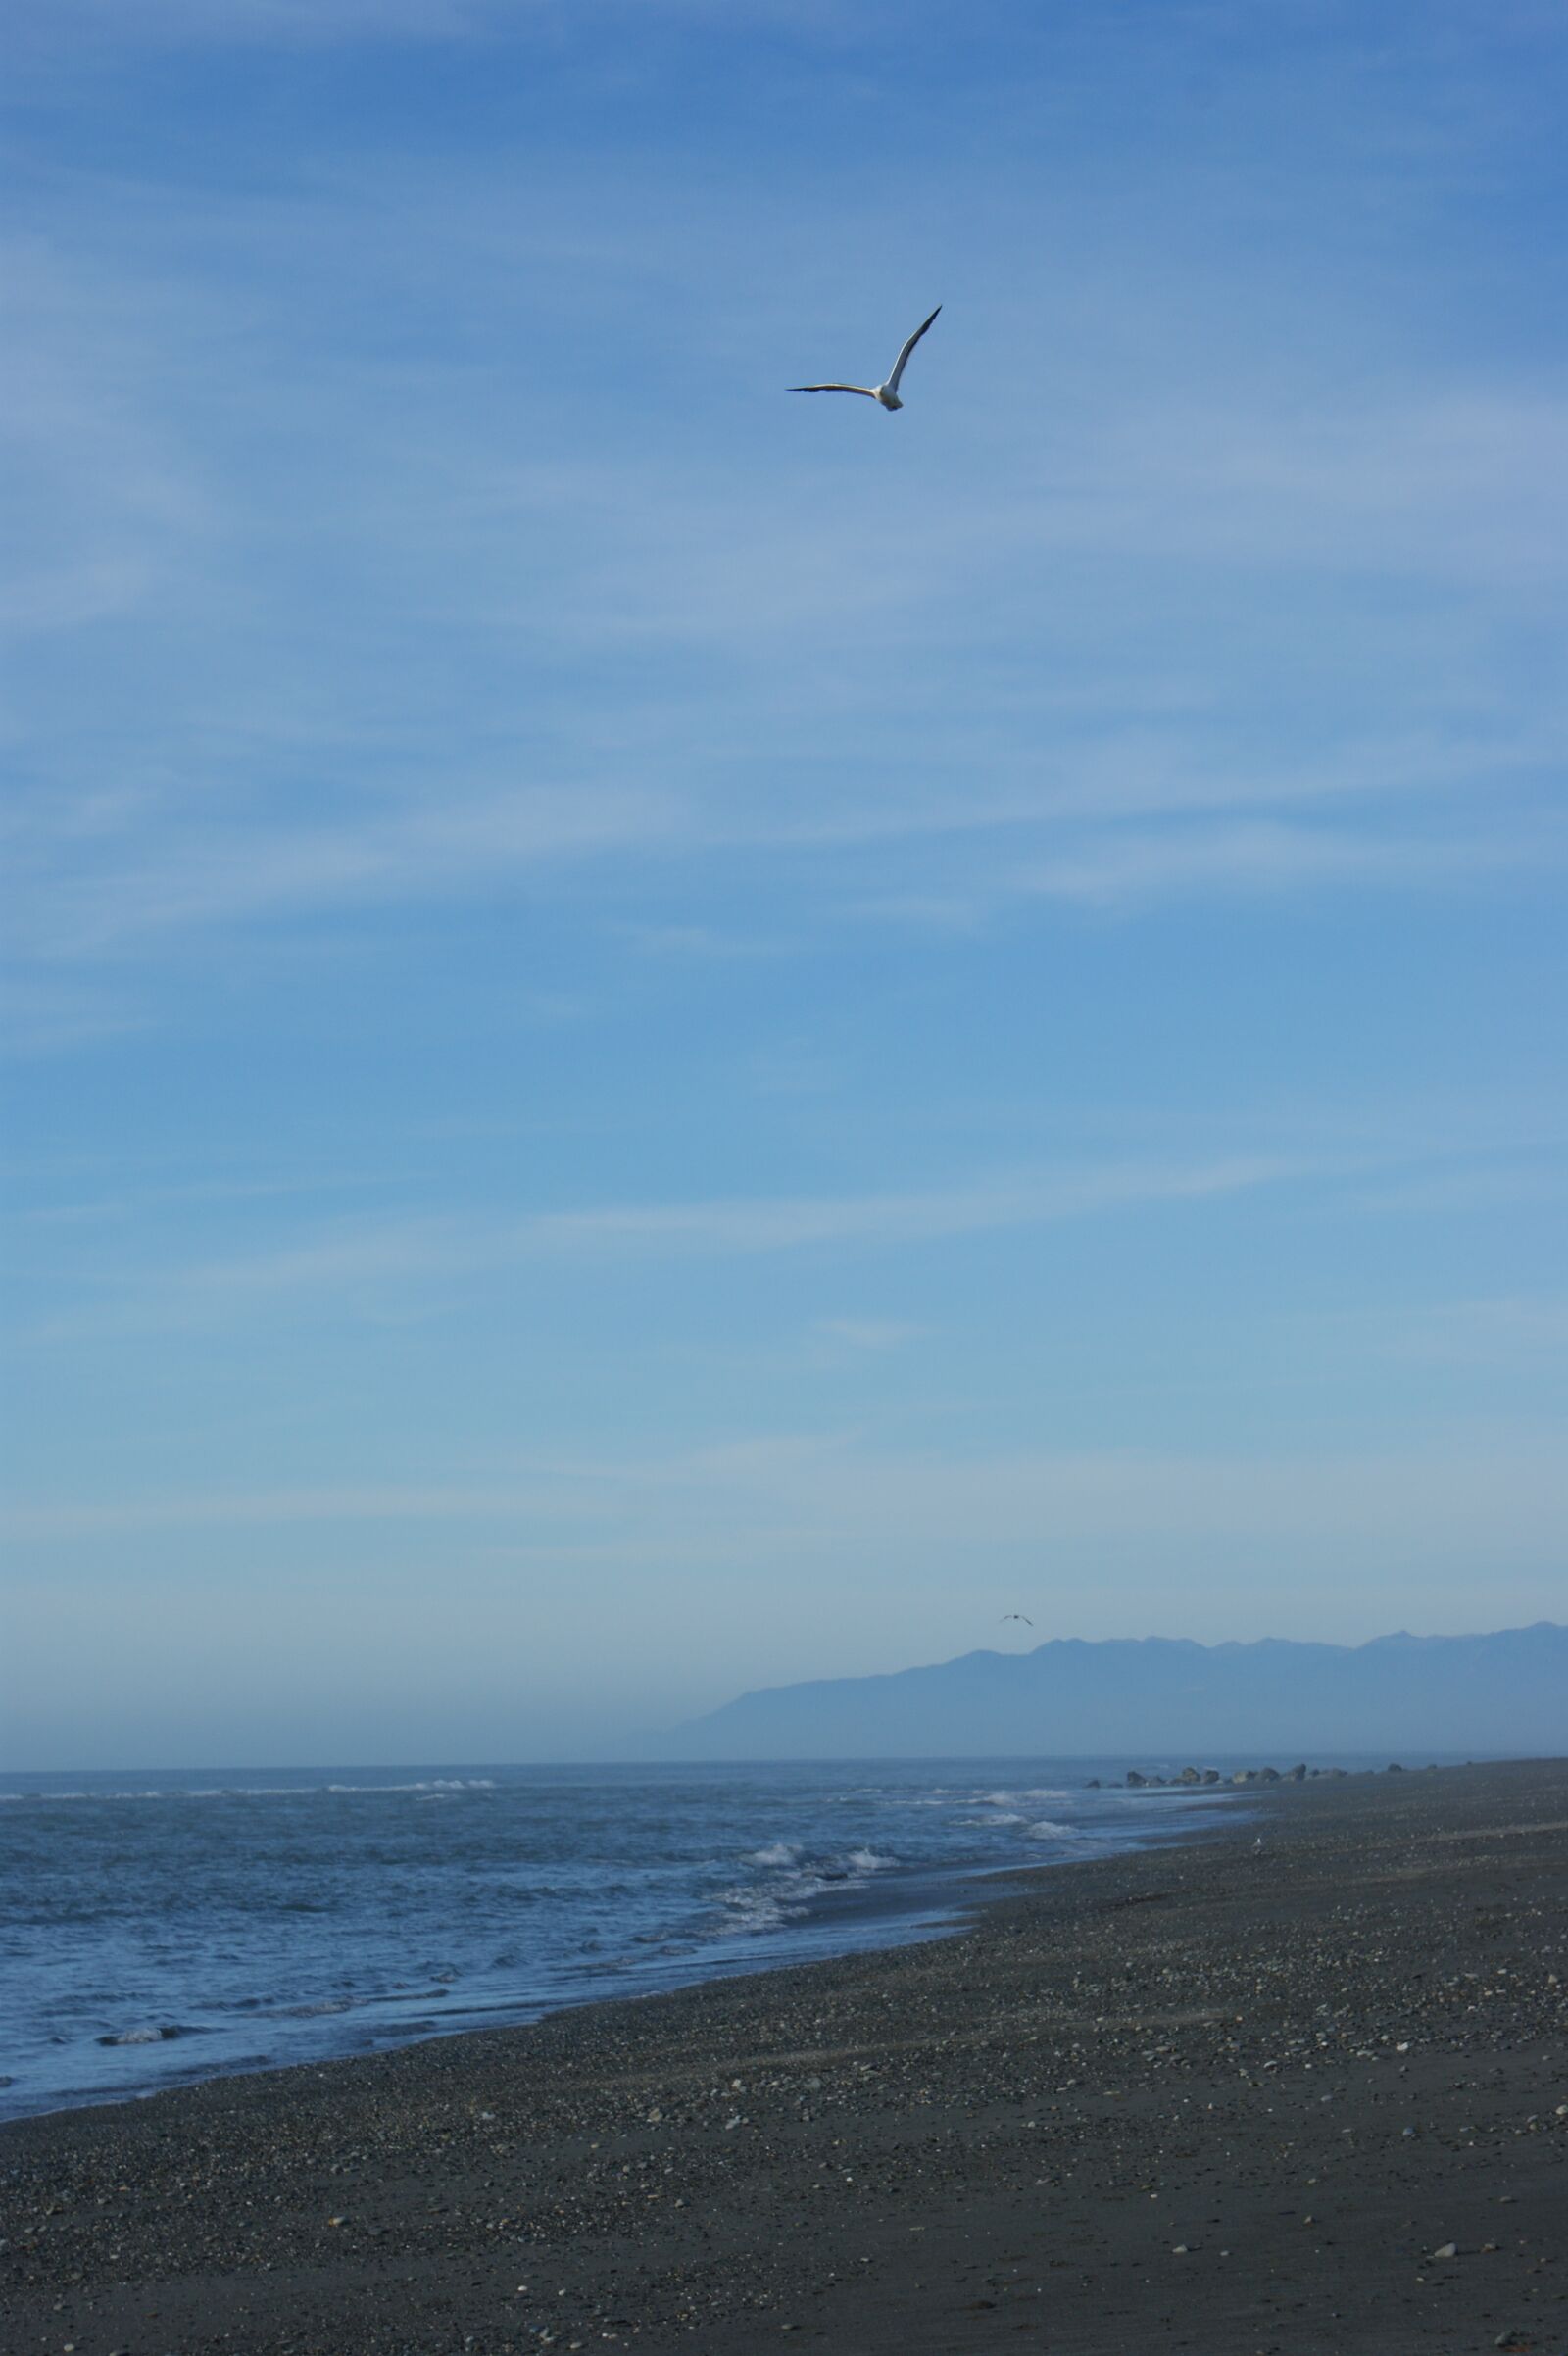 Sony Alpha DSLR-A350 sample photo. Beach, seagull, sky photography